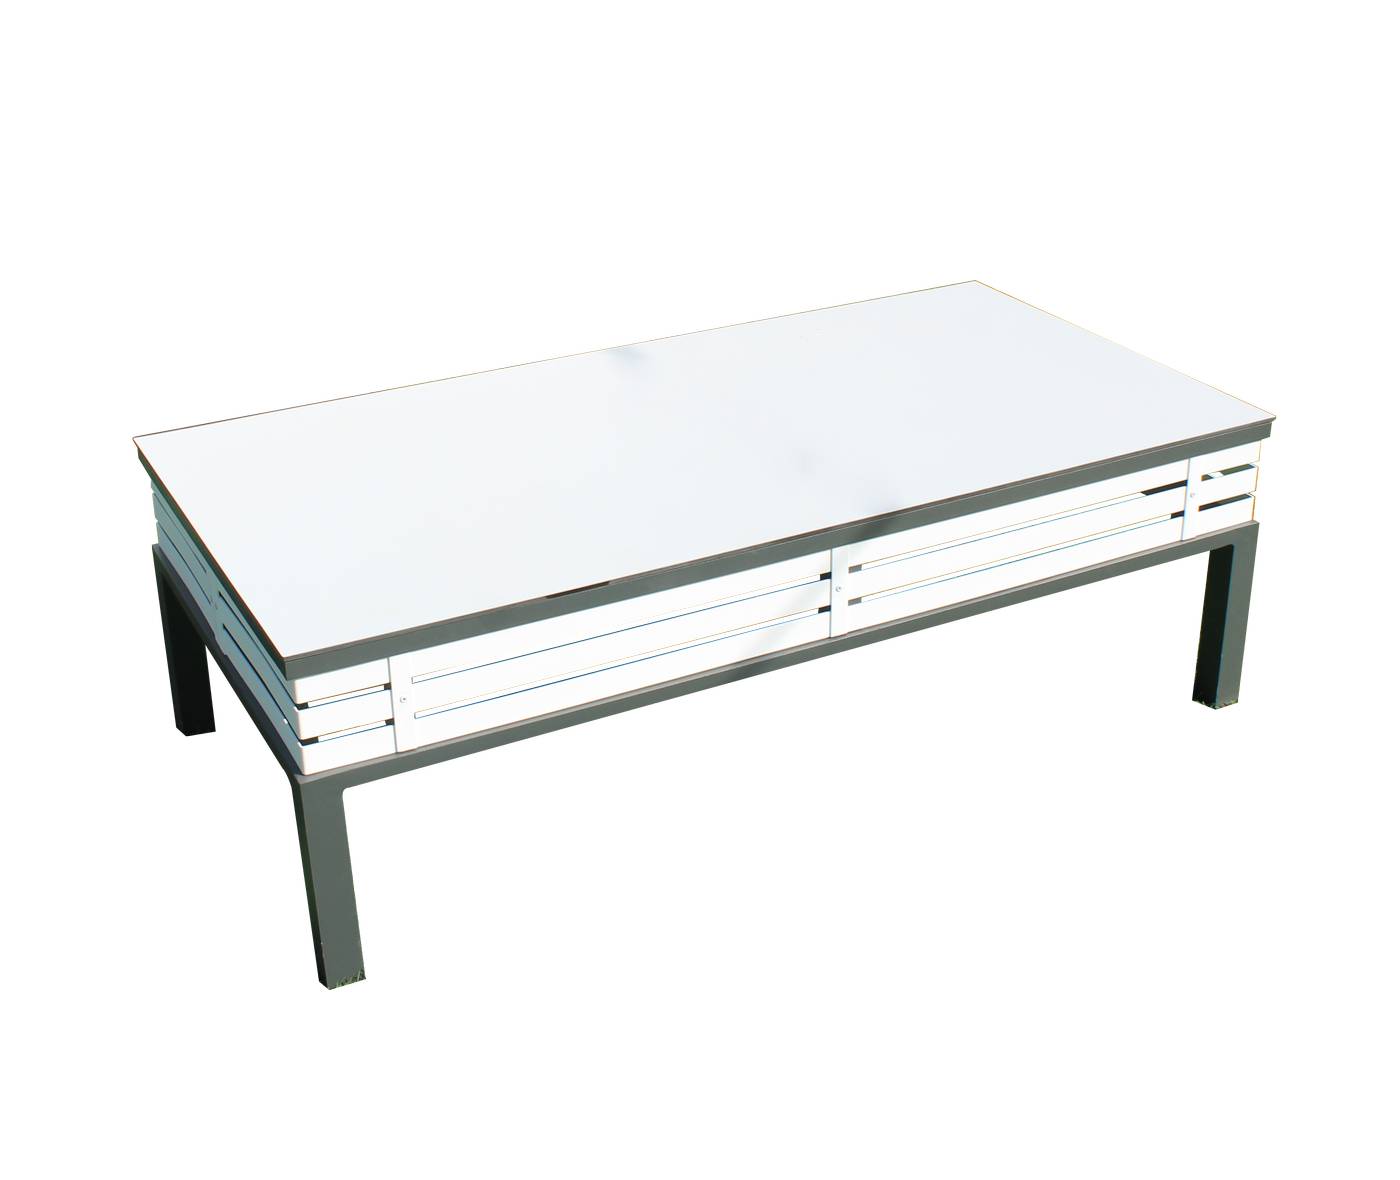 Lujosa mesa de centro rectangular de aluminio bicolor con tablero HPL de 120 cm.